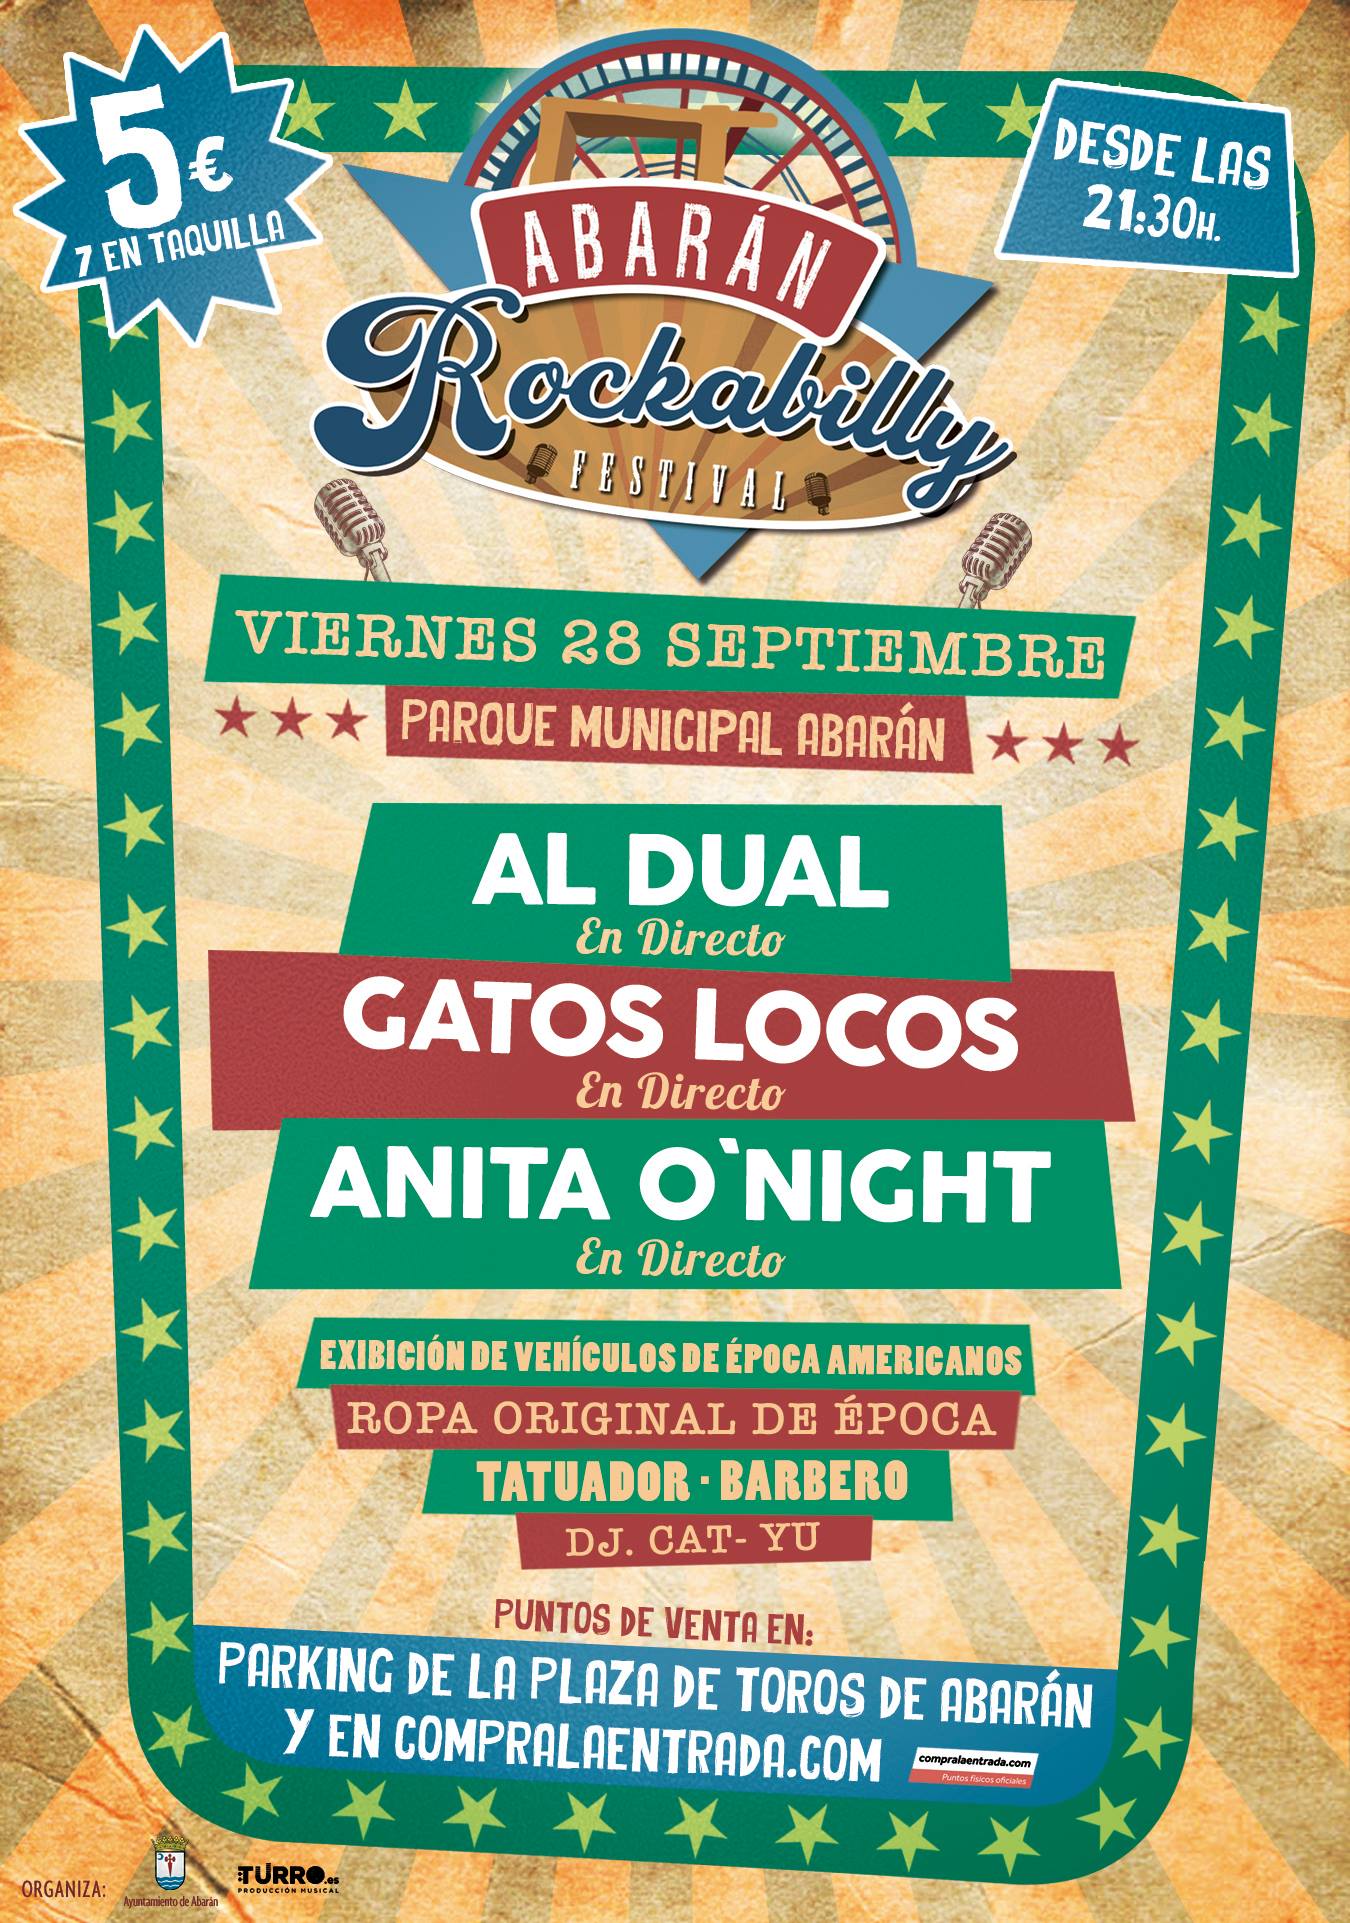 Abarán Rockabilly Festival